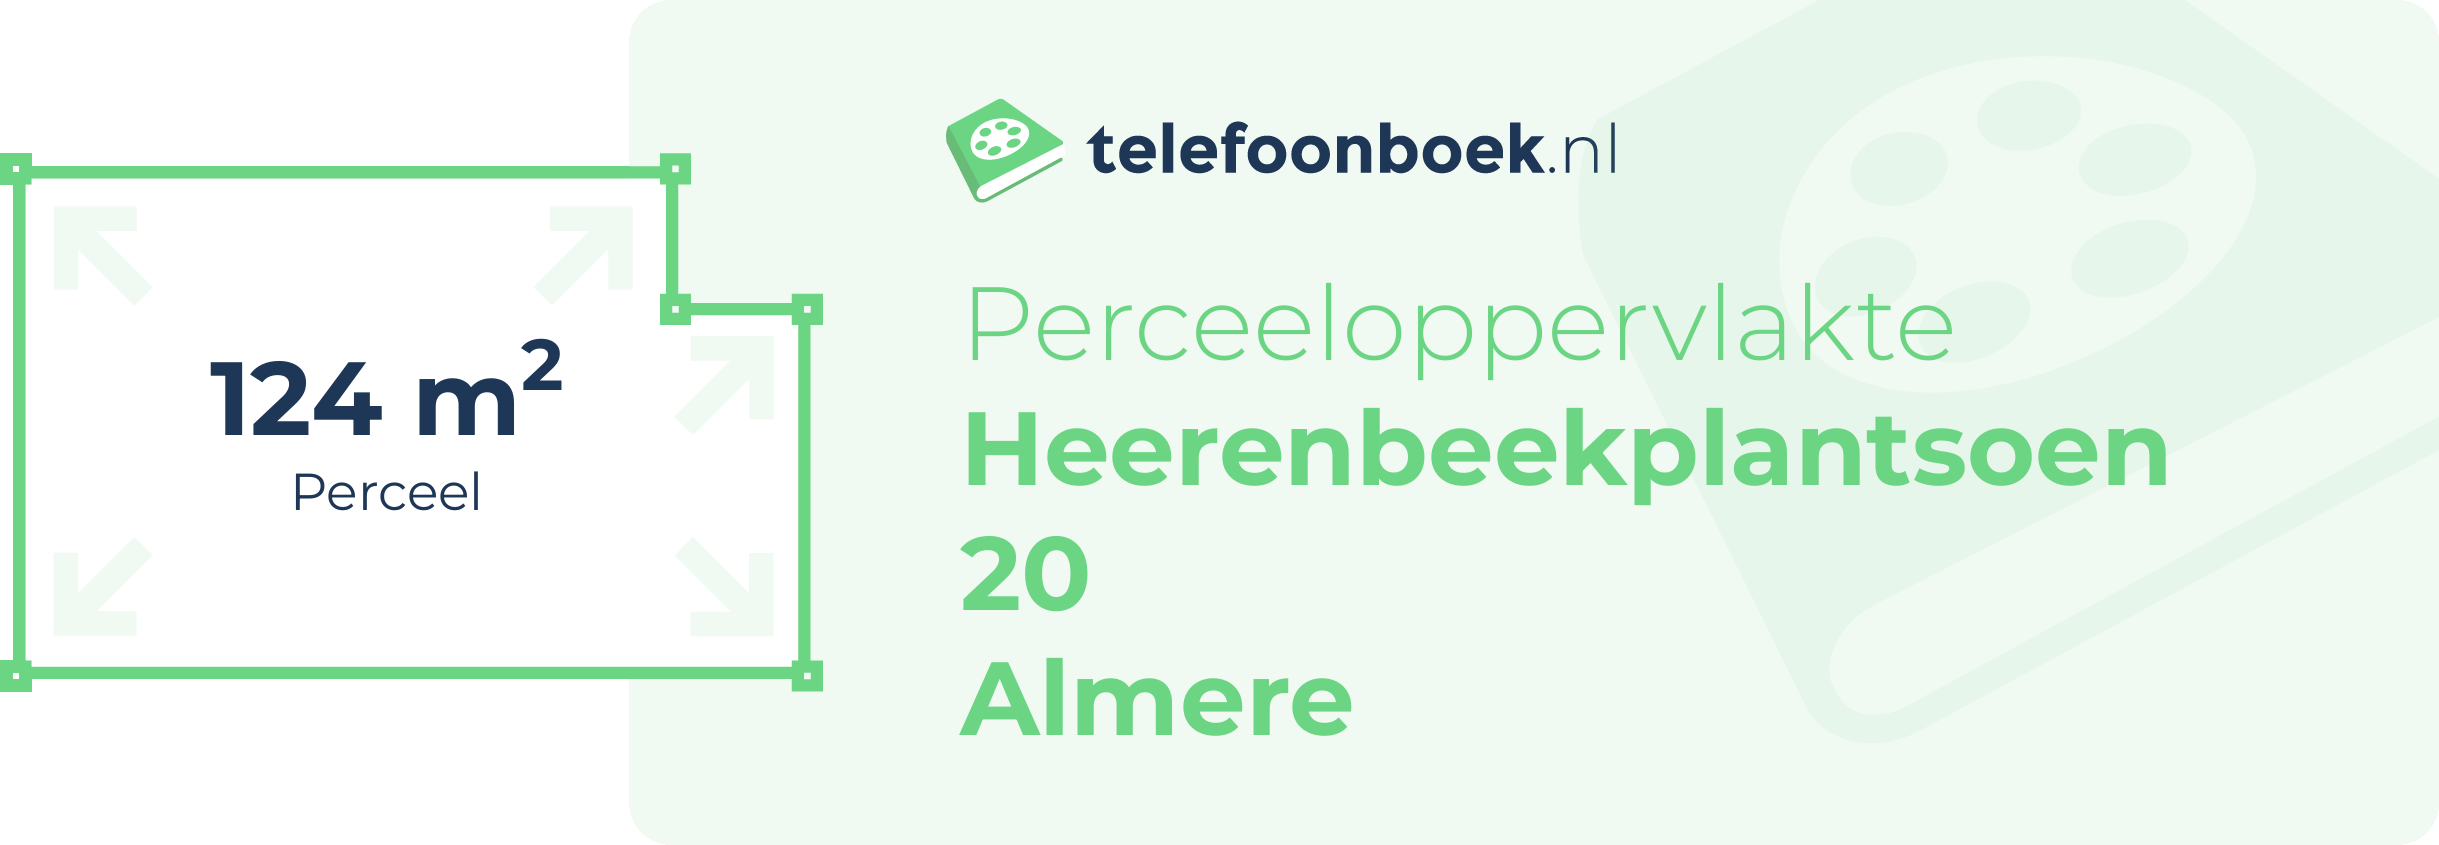 Perceeloppervlakte Heerenbeekplantsoen 20 Almere